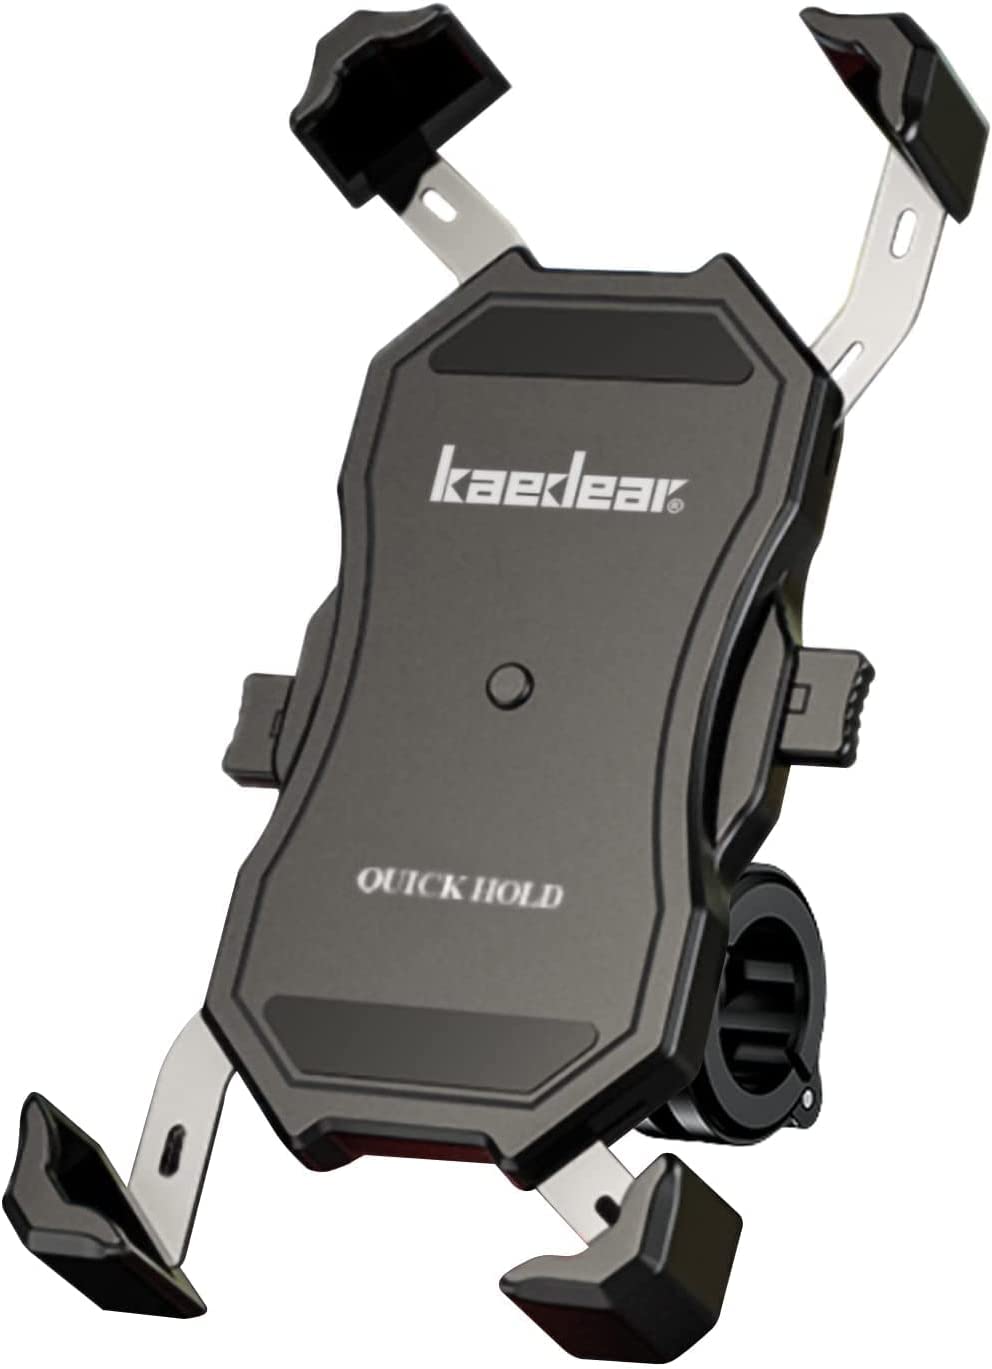 【日本代購】Kaedear 摩托車智能手機支架摩托車用快速孔手機支架智能手機鋁製支架式鏡子支架360度旋轉帶原摩托車自行車KDR-M11C (Black)